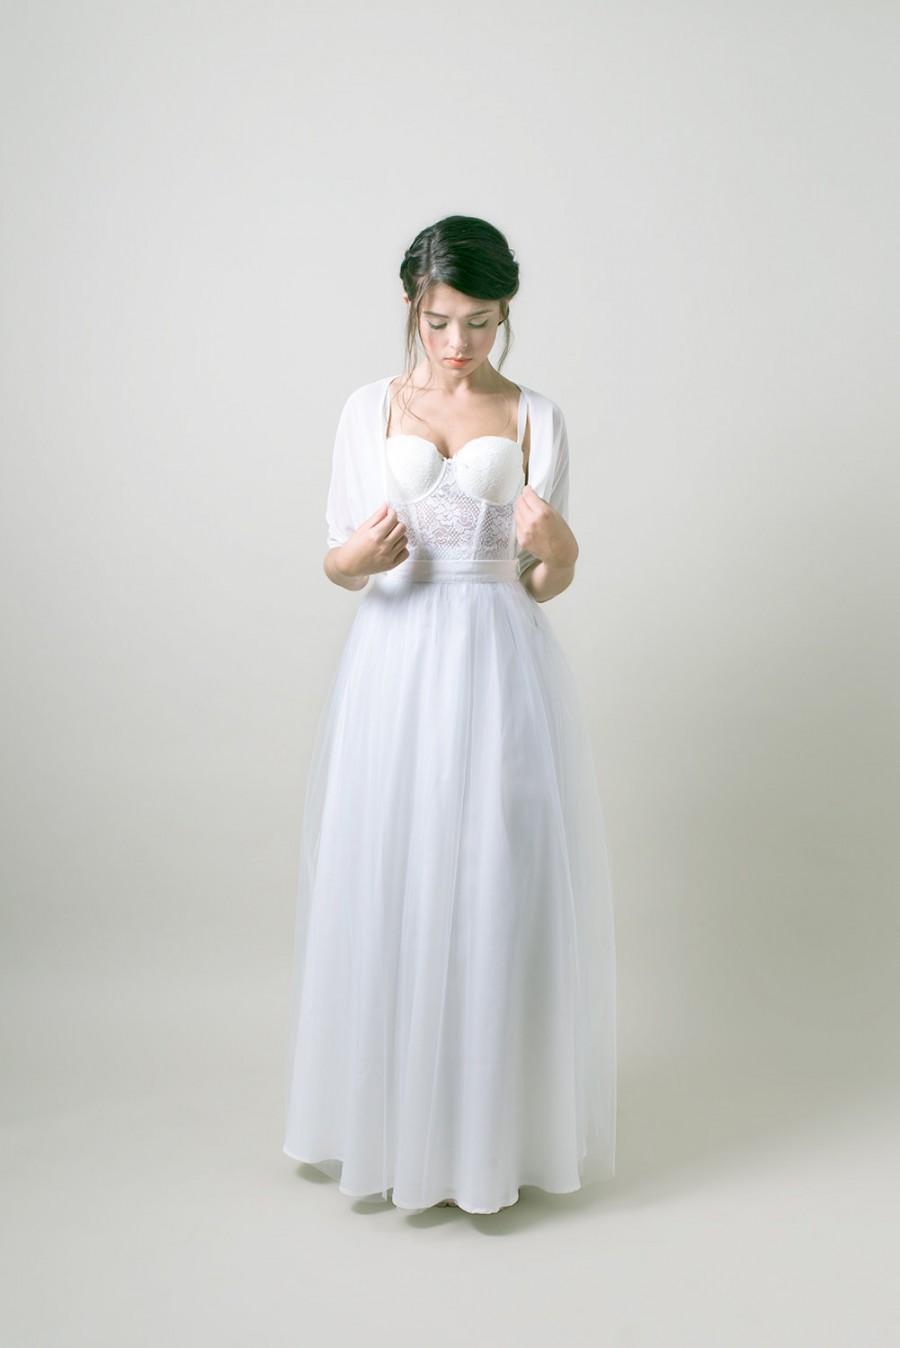 زفاف - White wedding bolero / Simple Bridal bolero / wedding jacket - Made to order